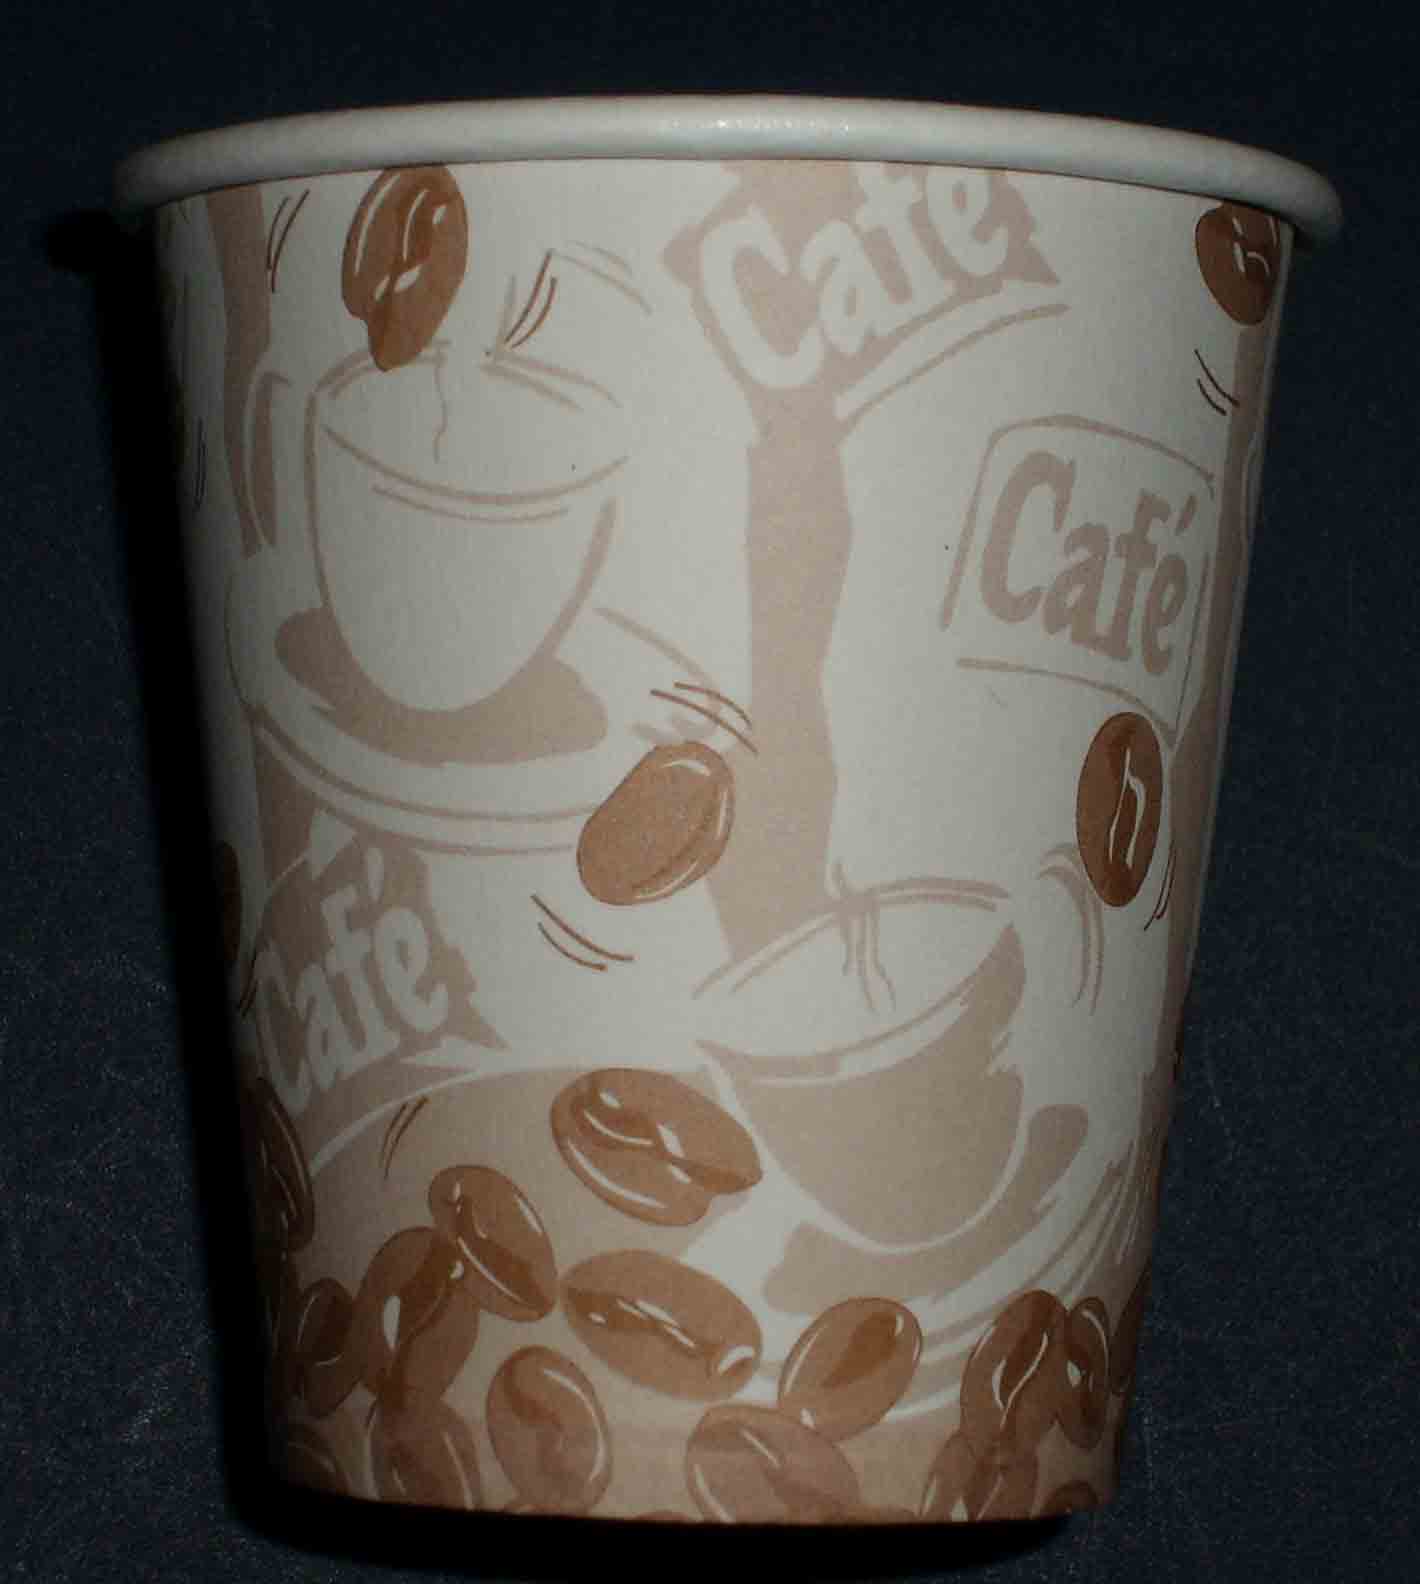 Coffee Cups (Coffee Cups)